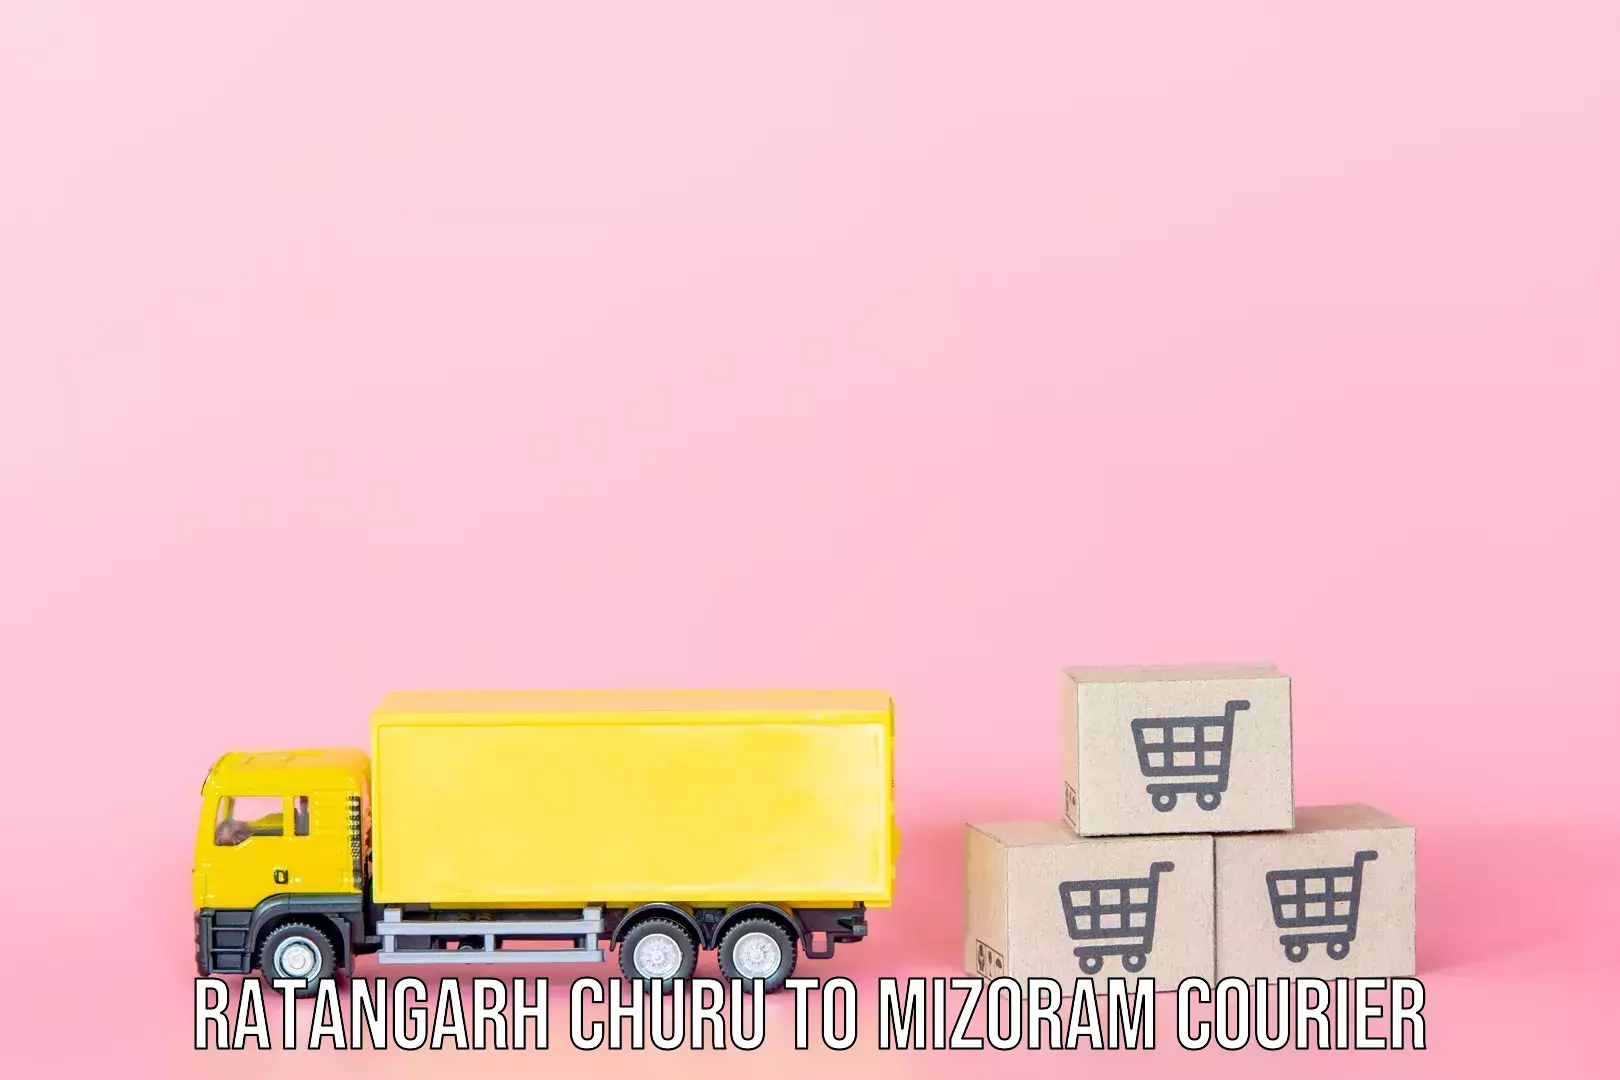 Luggage delivery app Ratangarh Churu to Mizoram